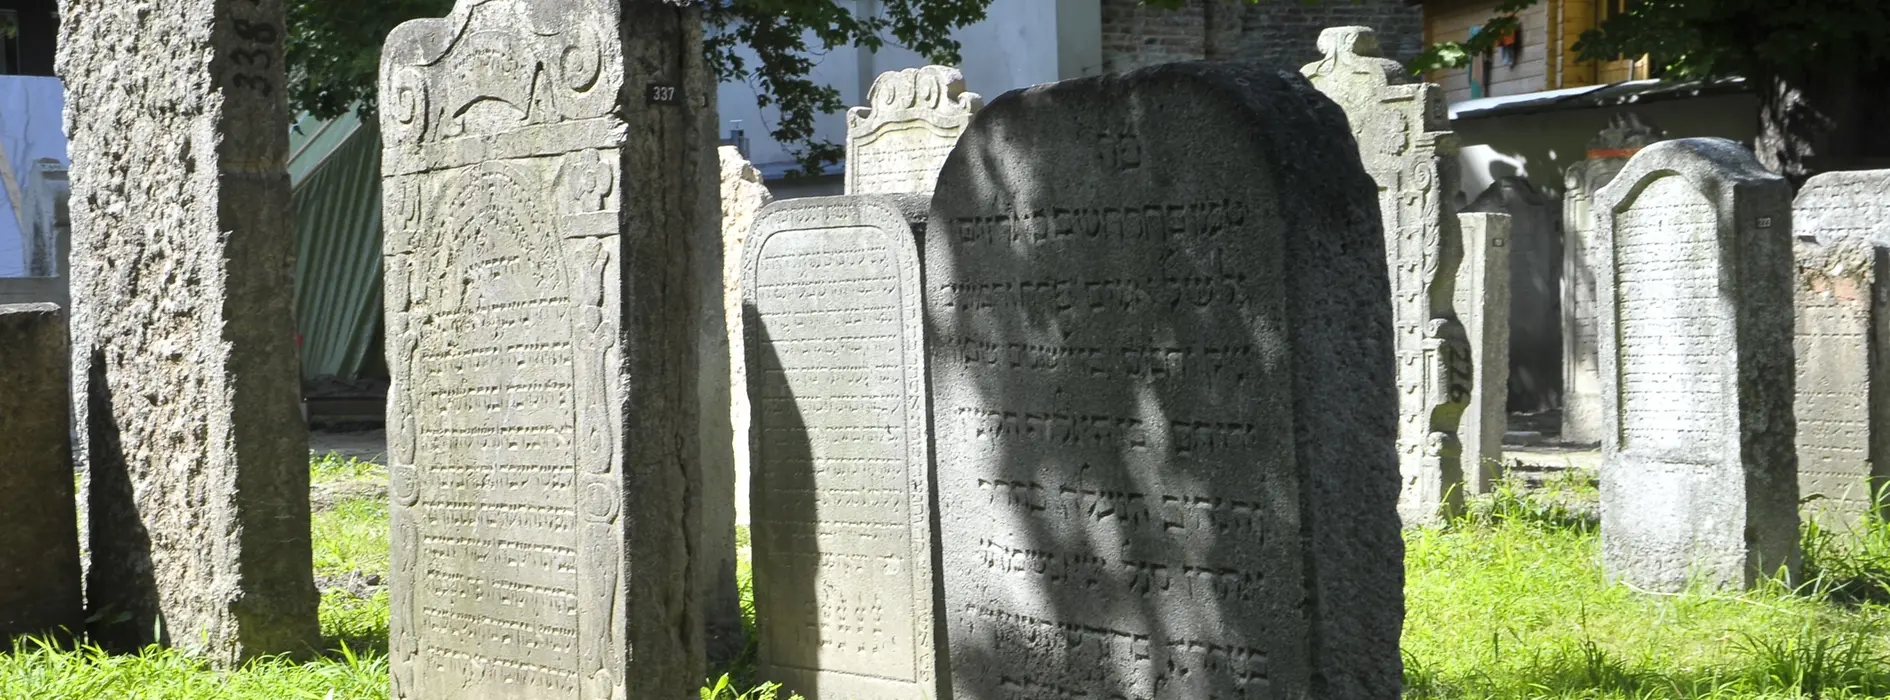 Antiguas lápidas judías